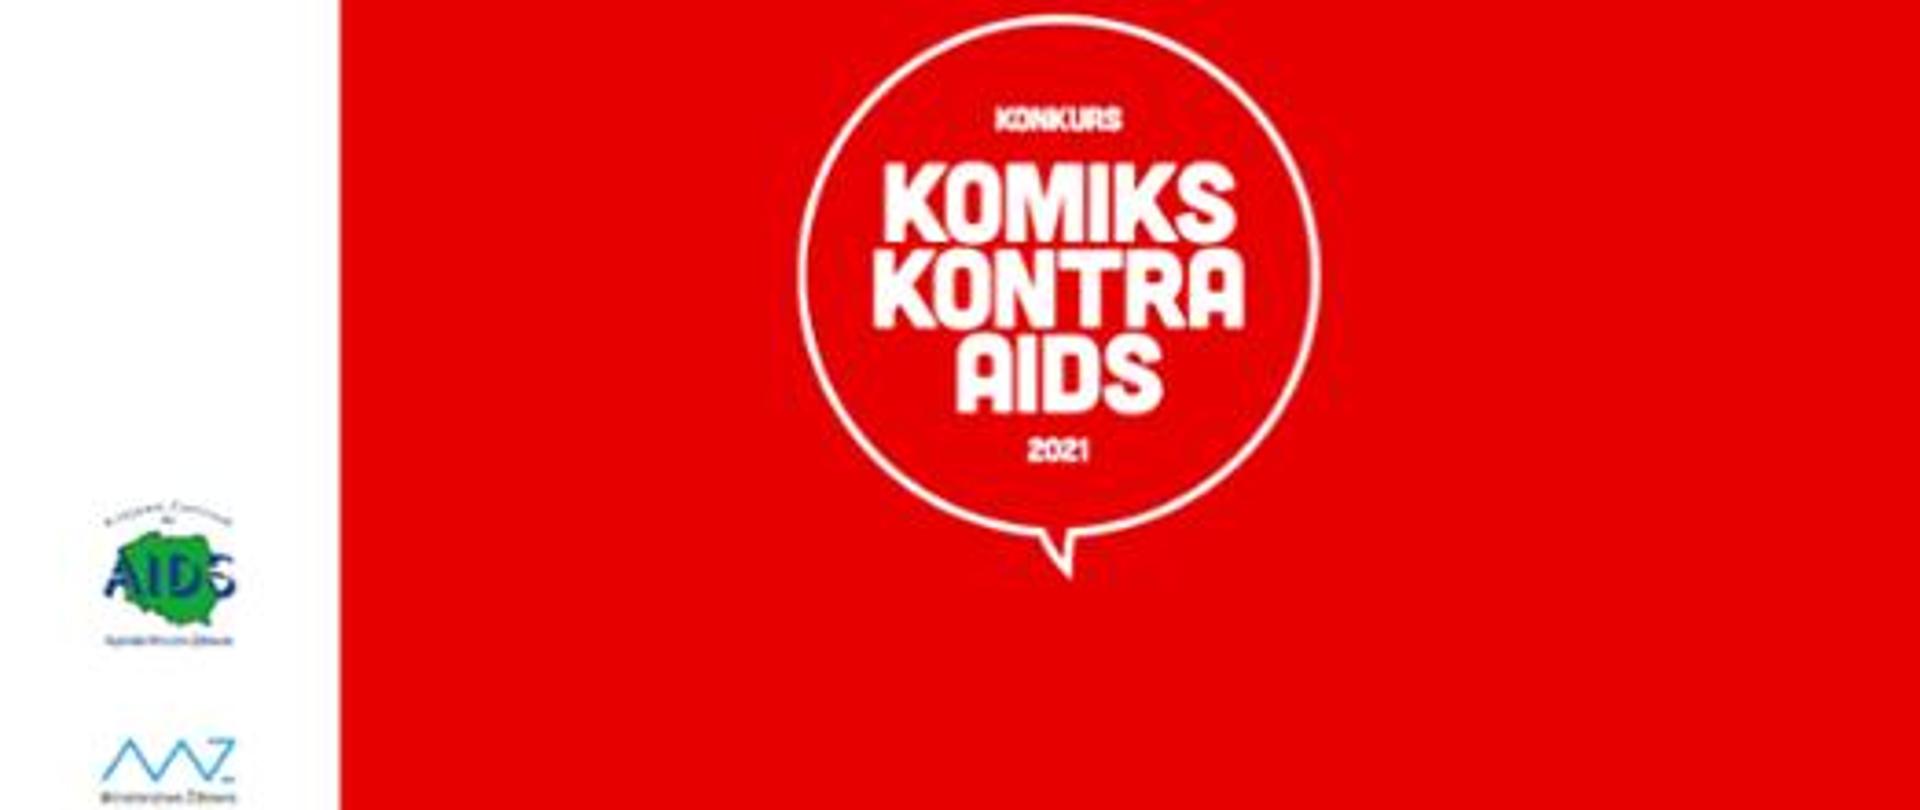 komiks_kontra_aids